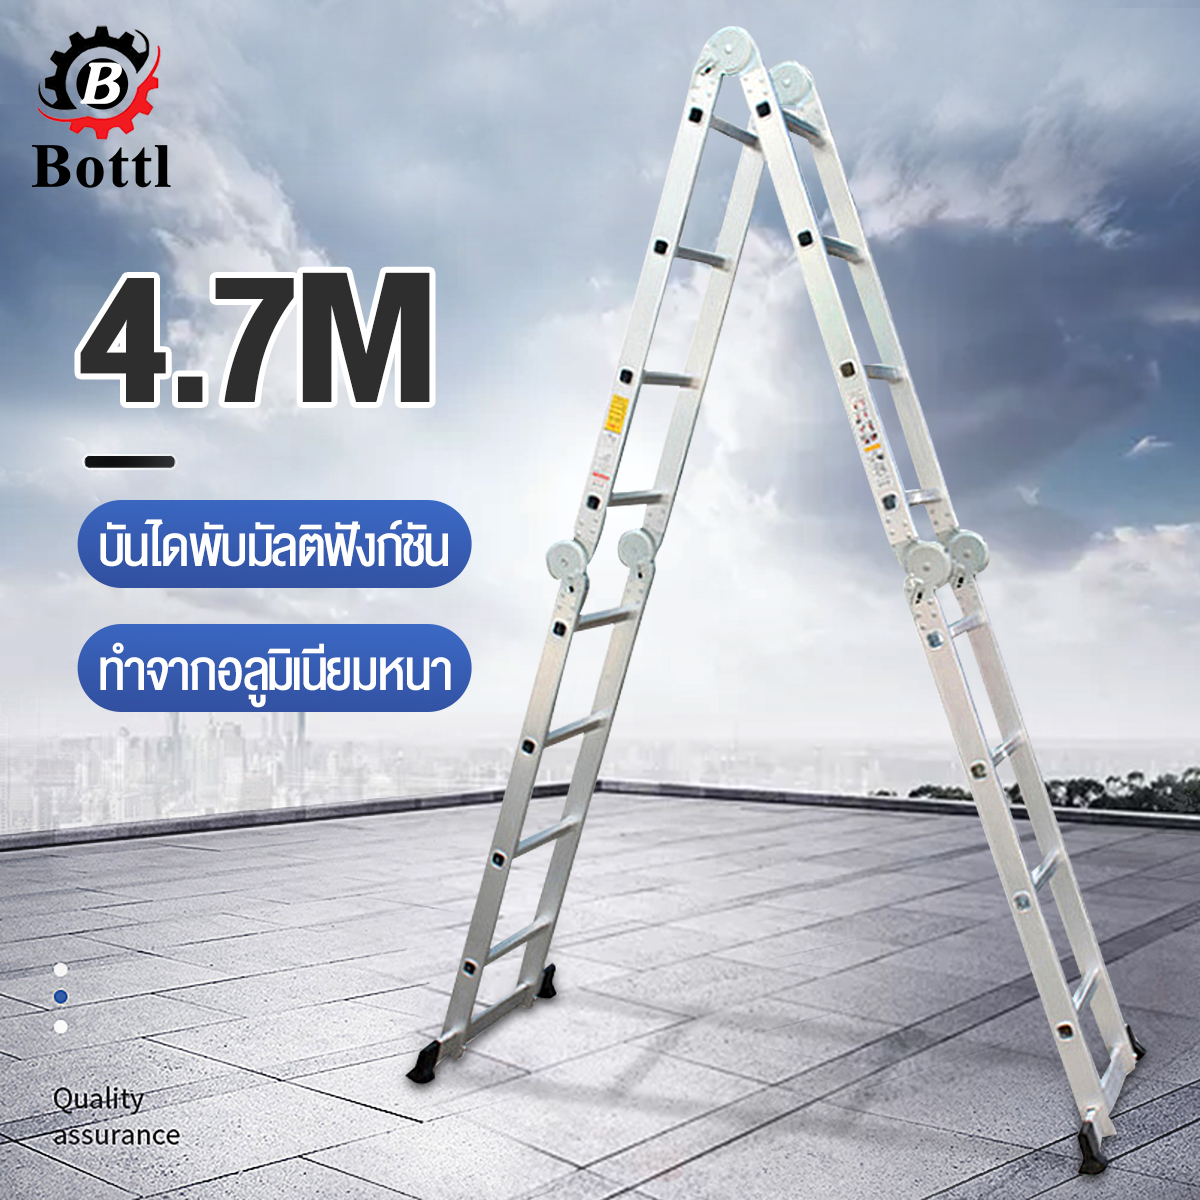 【จัดส่งฟรี】BOTTL บันไดพับได้ บันไดพับได้อลูมิเนียม บันไดช่าง  16 ขั้น รุ่น 4x4  บันไดอลูมิเนียม เมตร ยาวทั้งหมด 4.7 เมตร Folding ladder